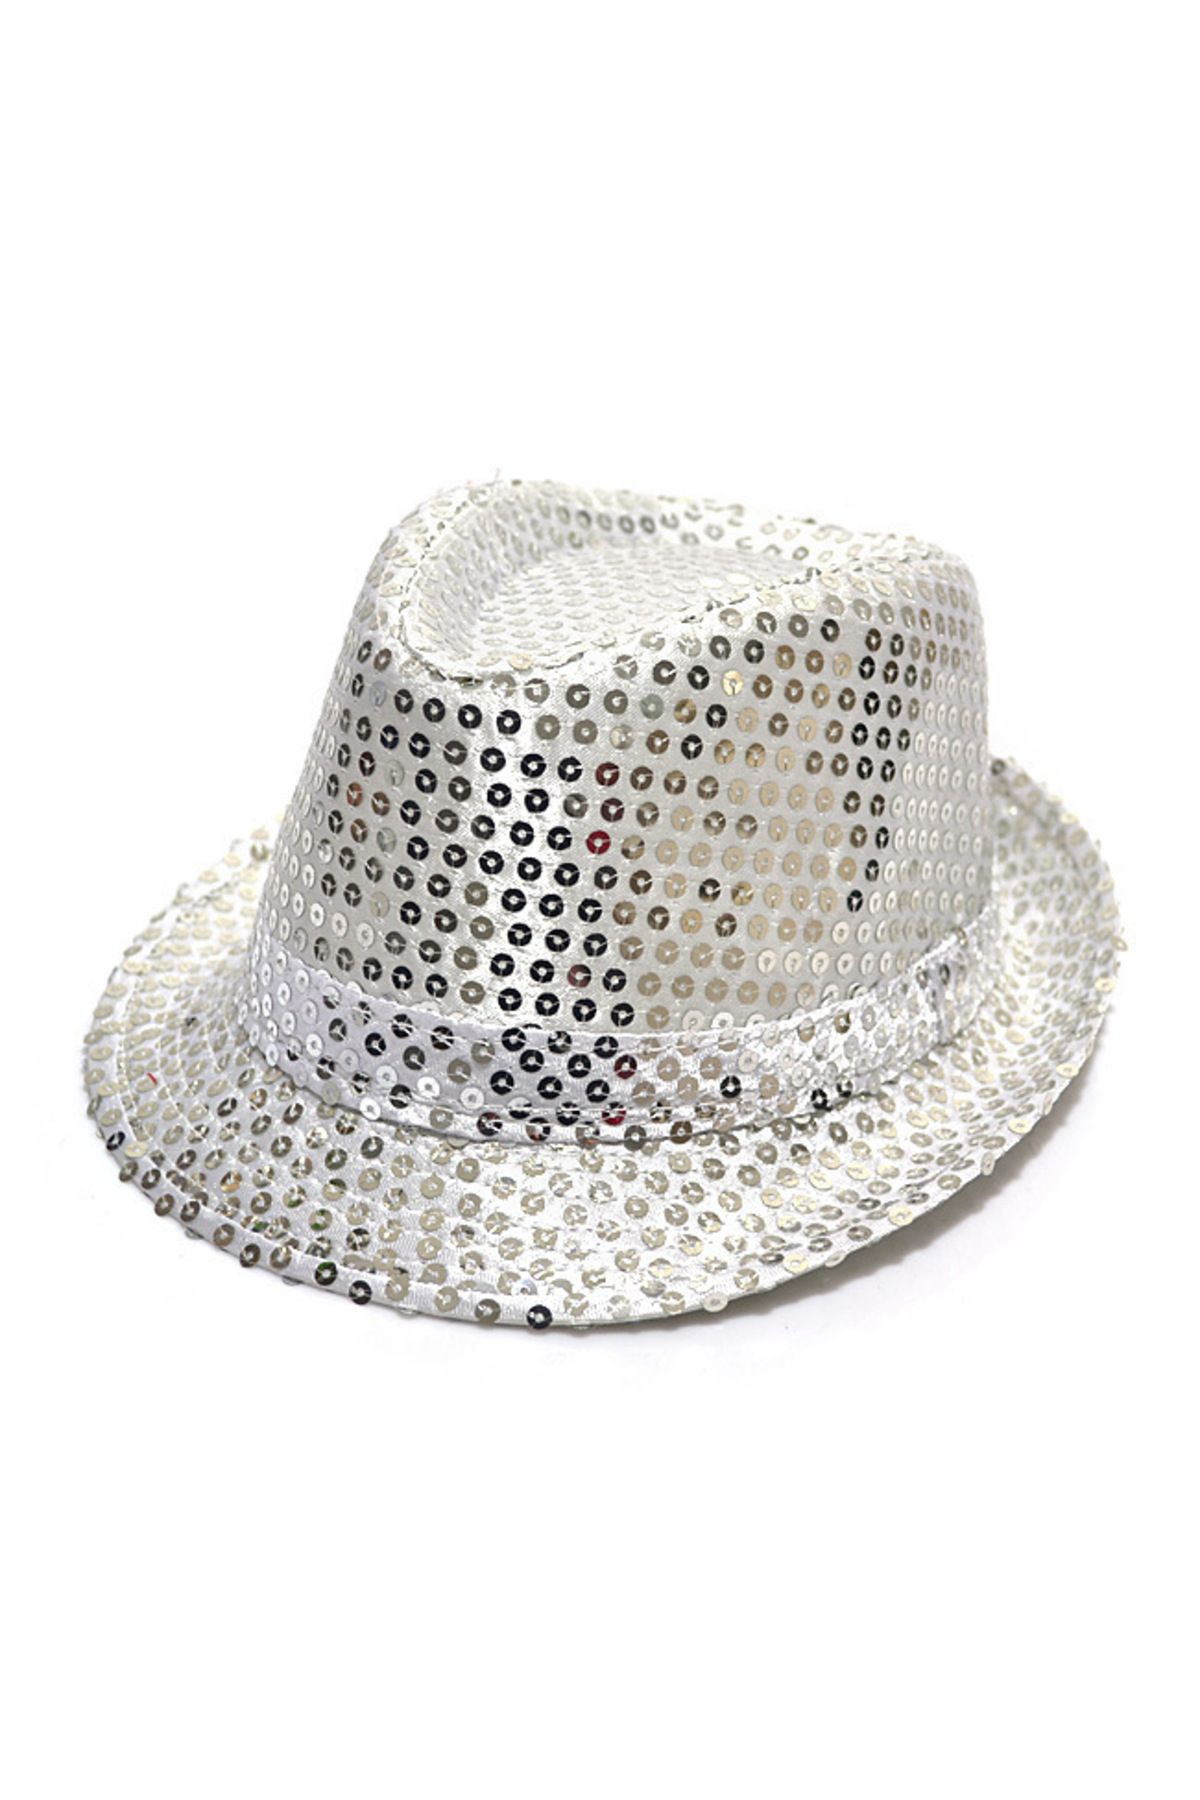 HİMARRY Himarry Çocuk Boy Gümüş Payetli Şapka Gösteri Şapkası Michael Jackson Şapkası 54 No